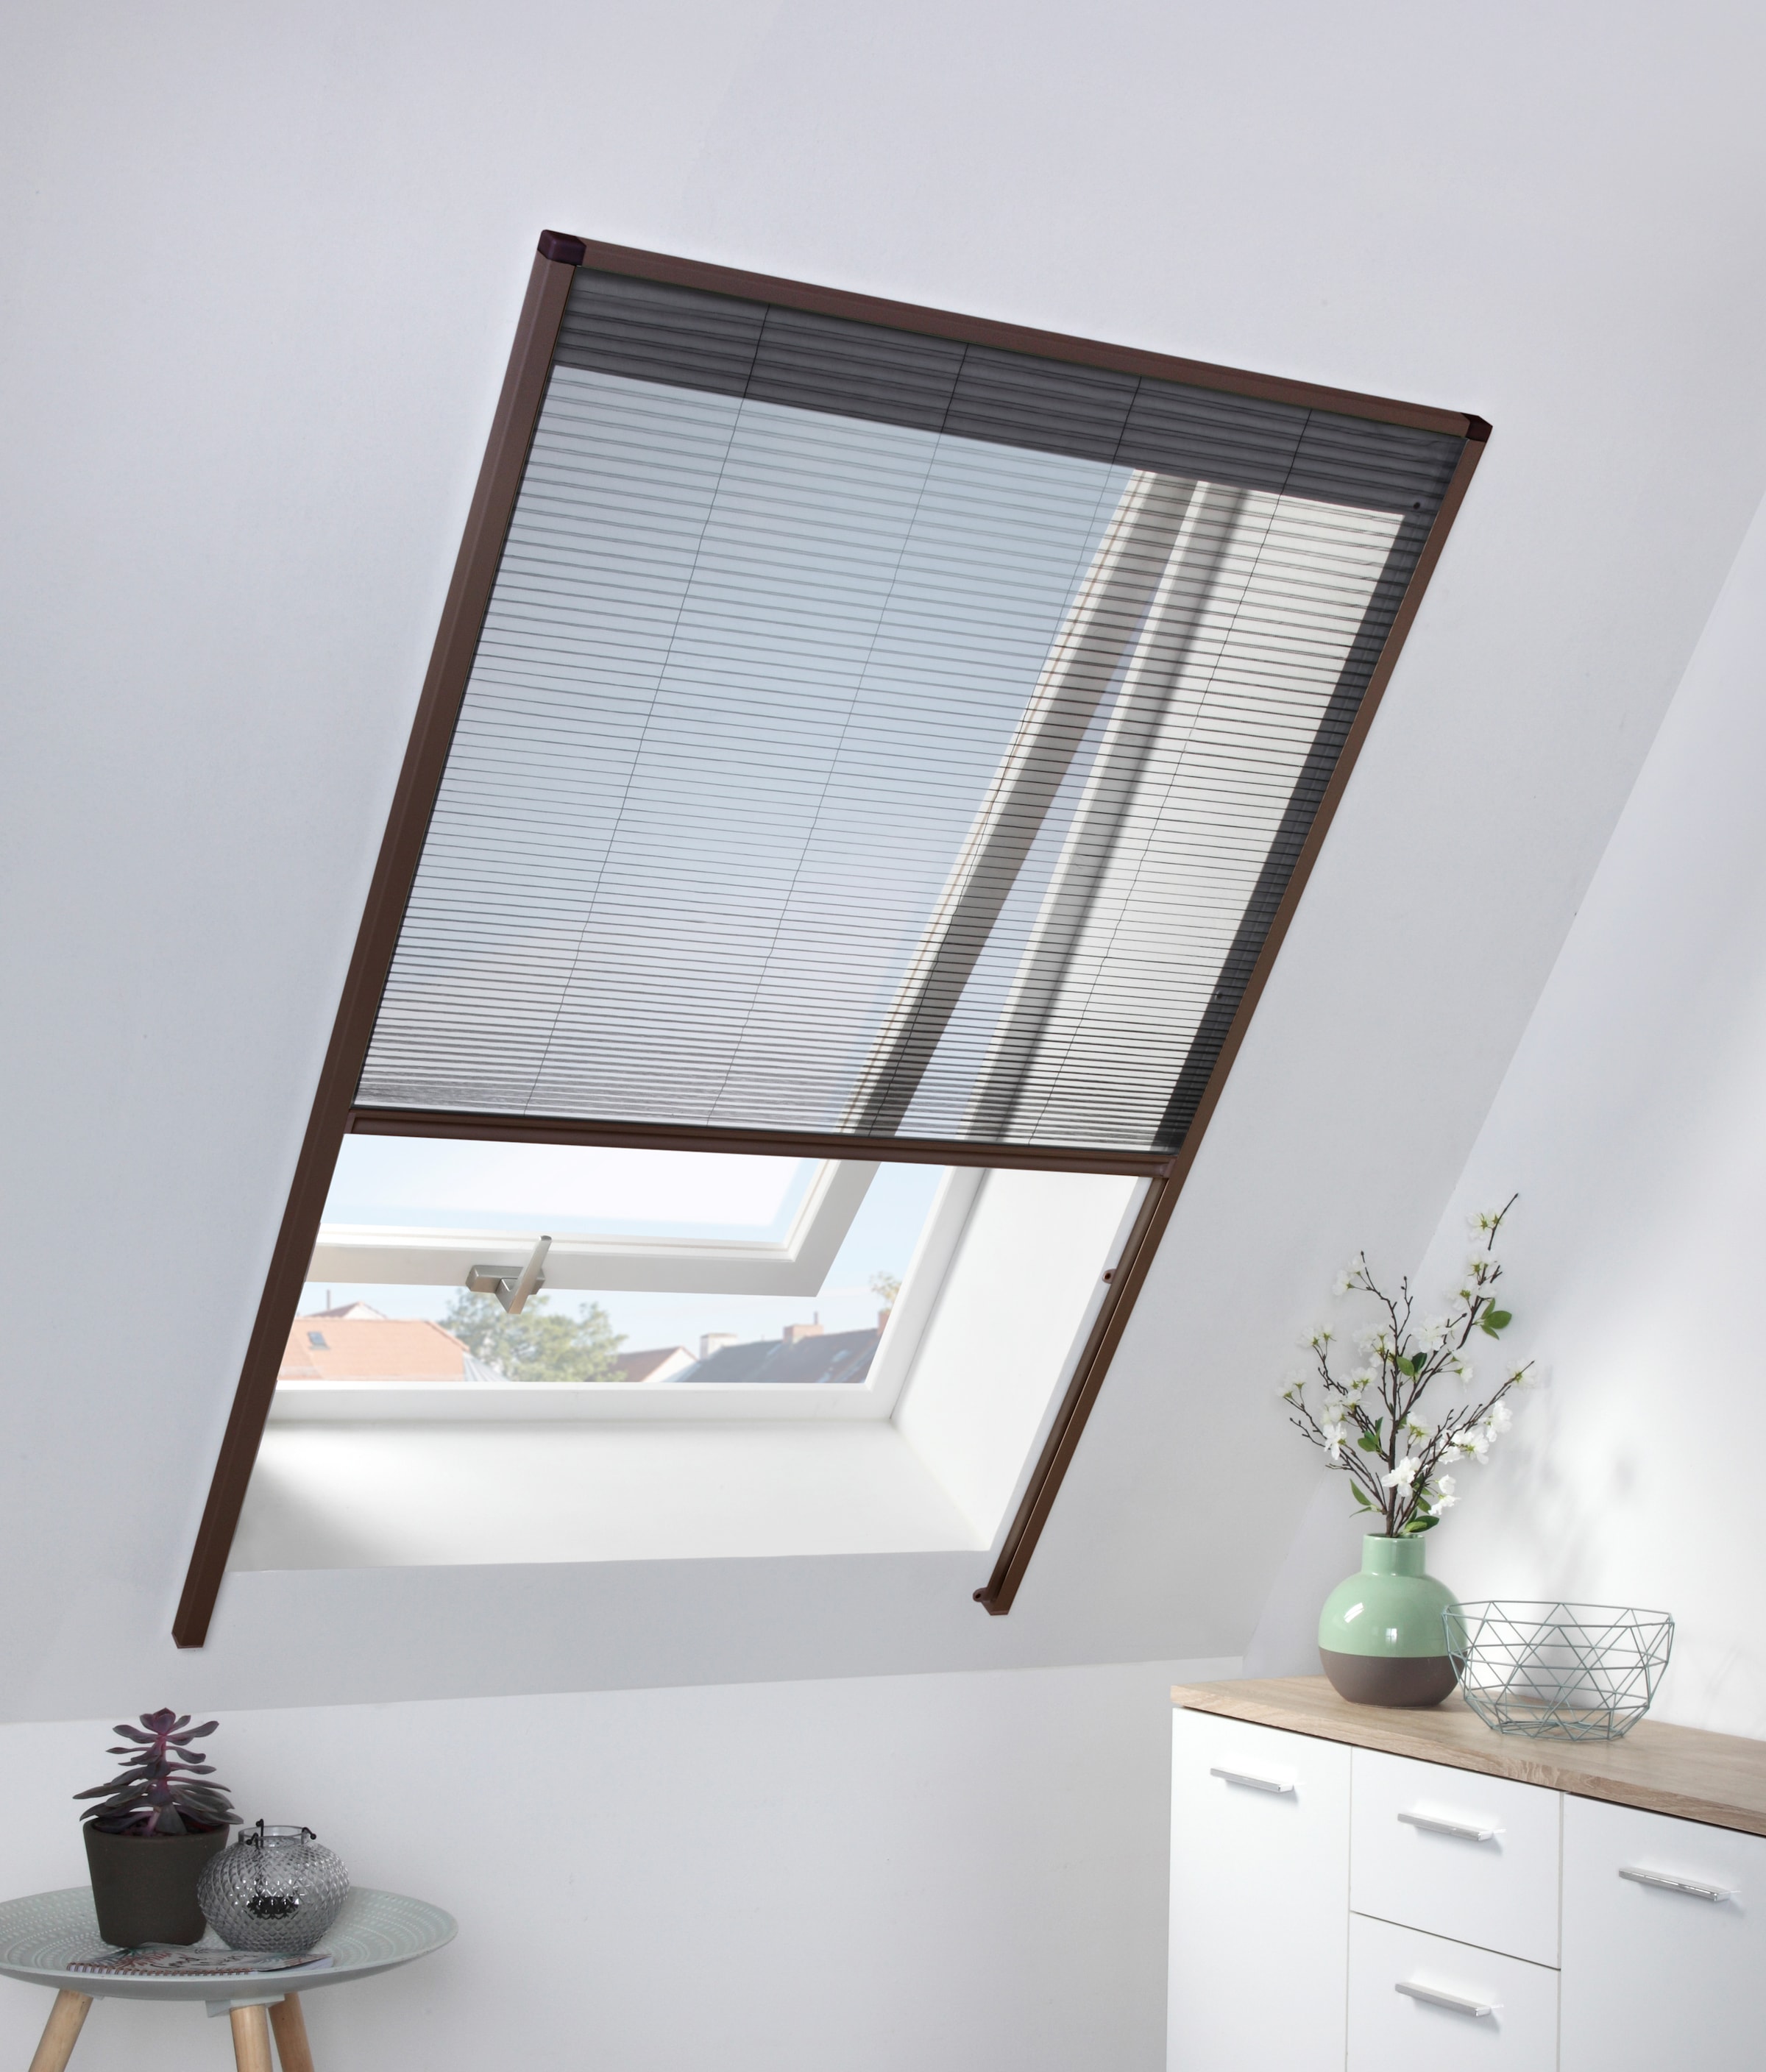 hecht international Insektenschutzrollo »für Dachfenster«, transparent, braun/anthrazit, BxH: 110x160 cm